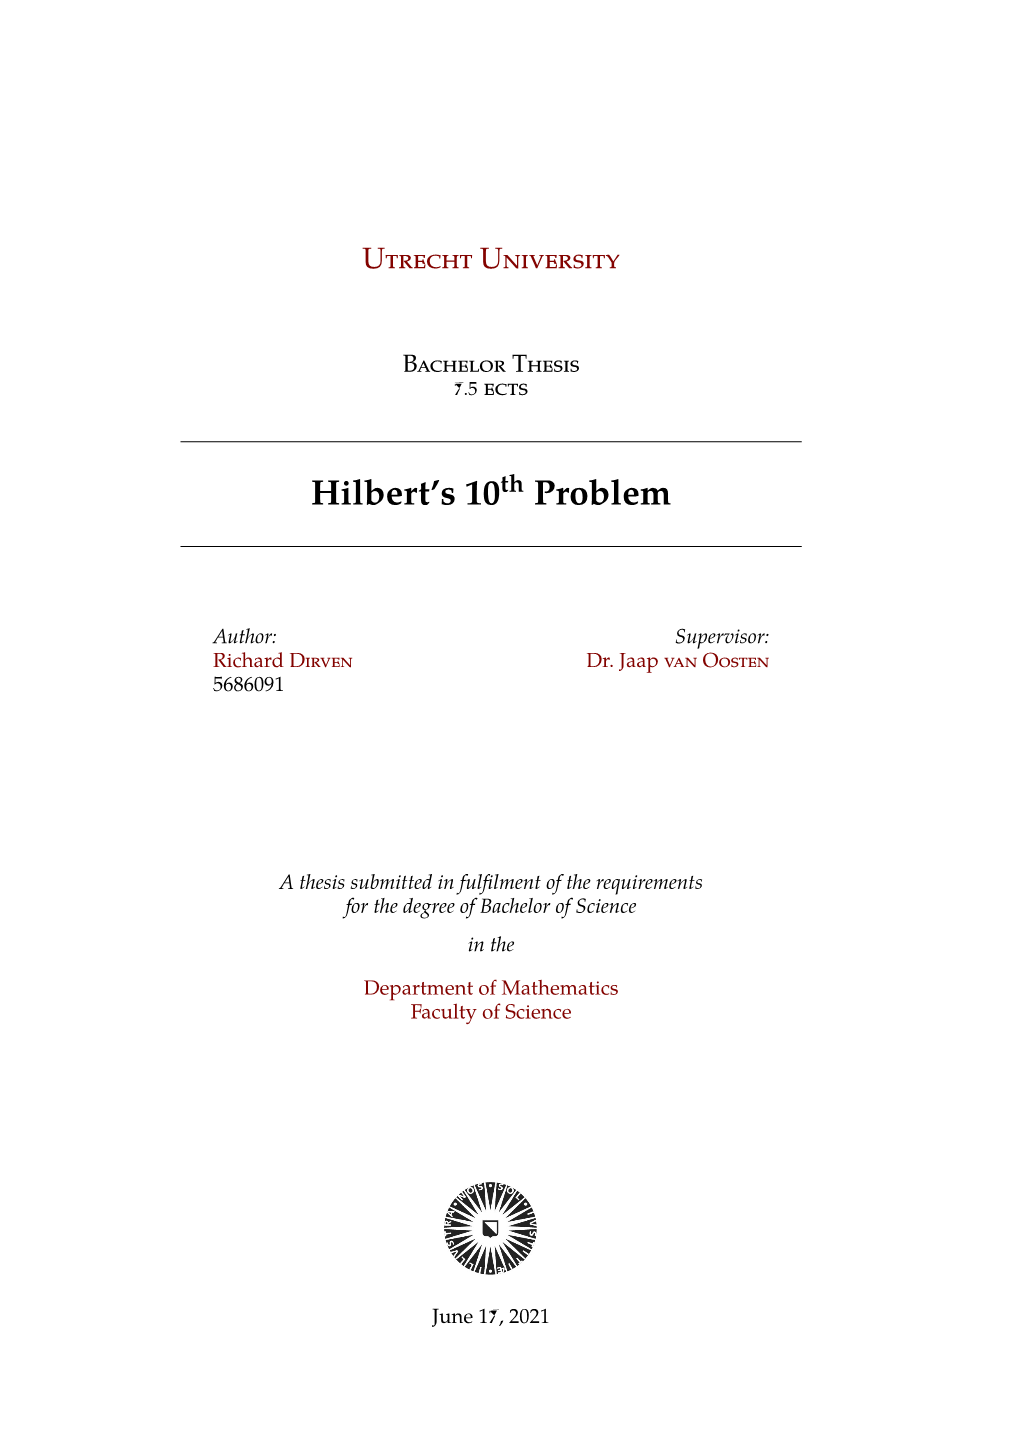 Hilbert's 10Th Problem